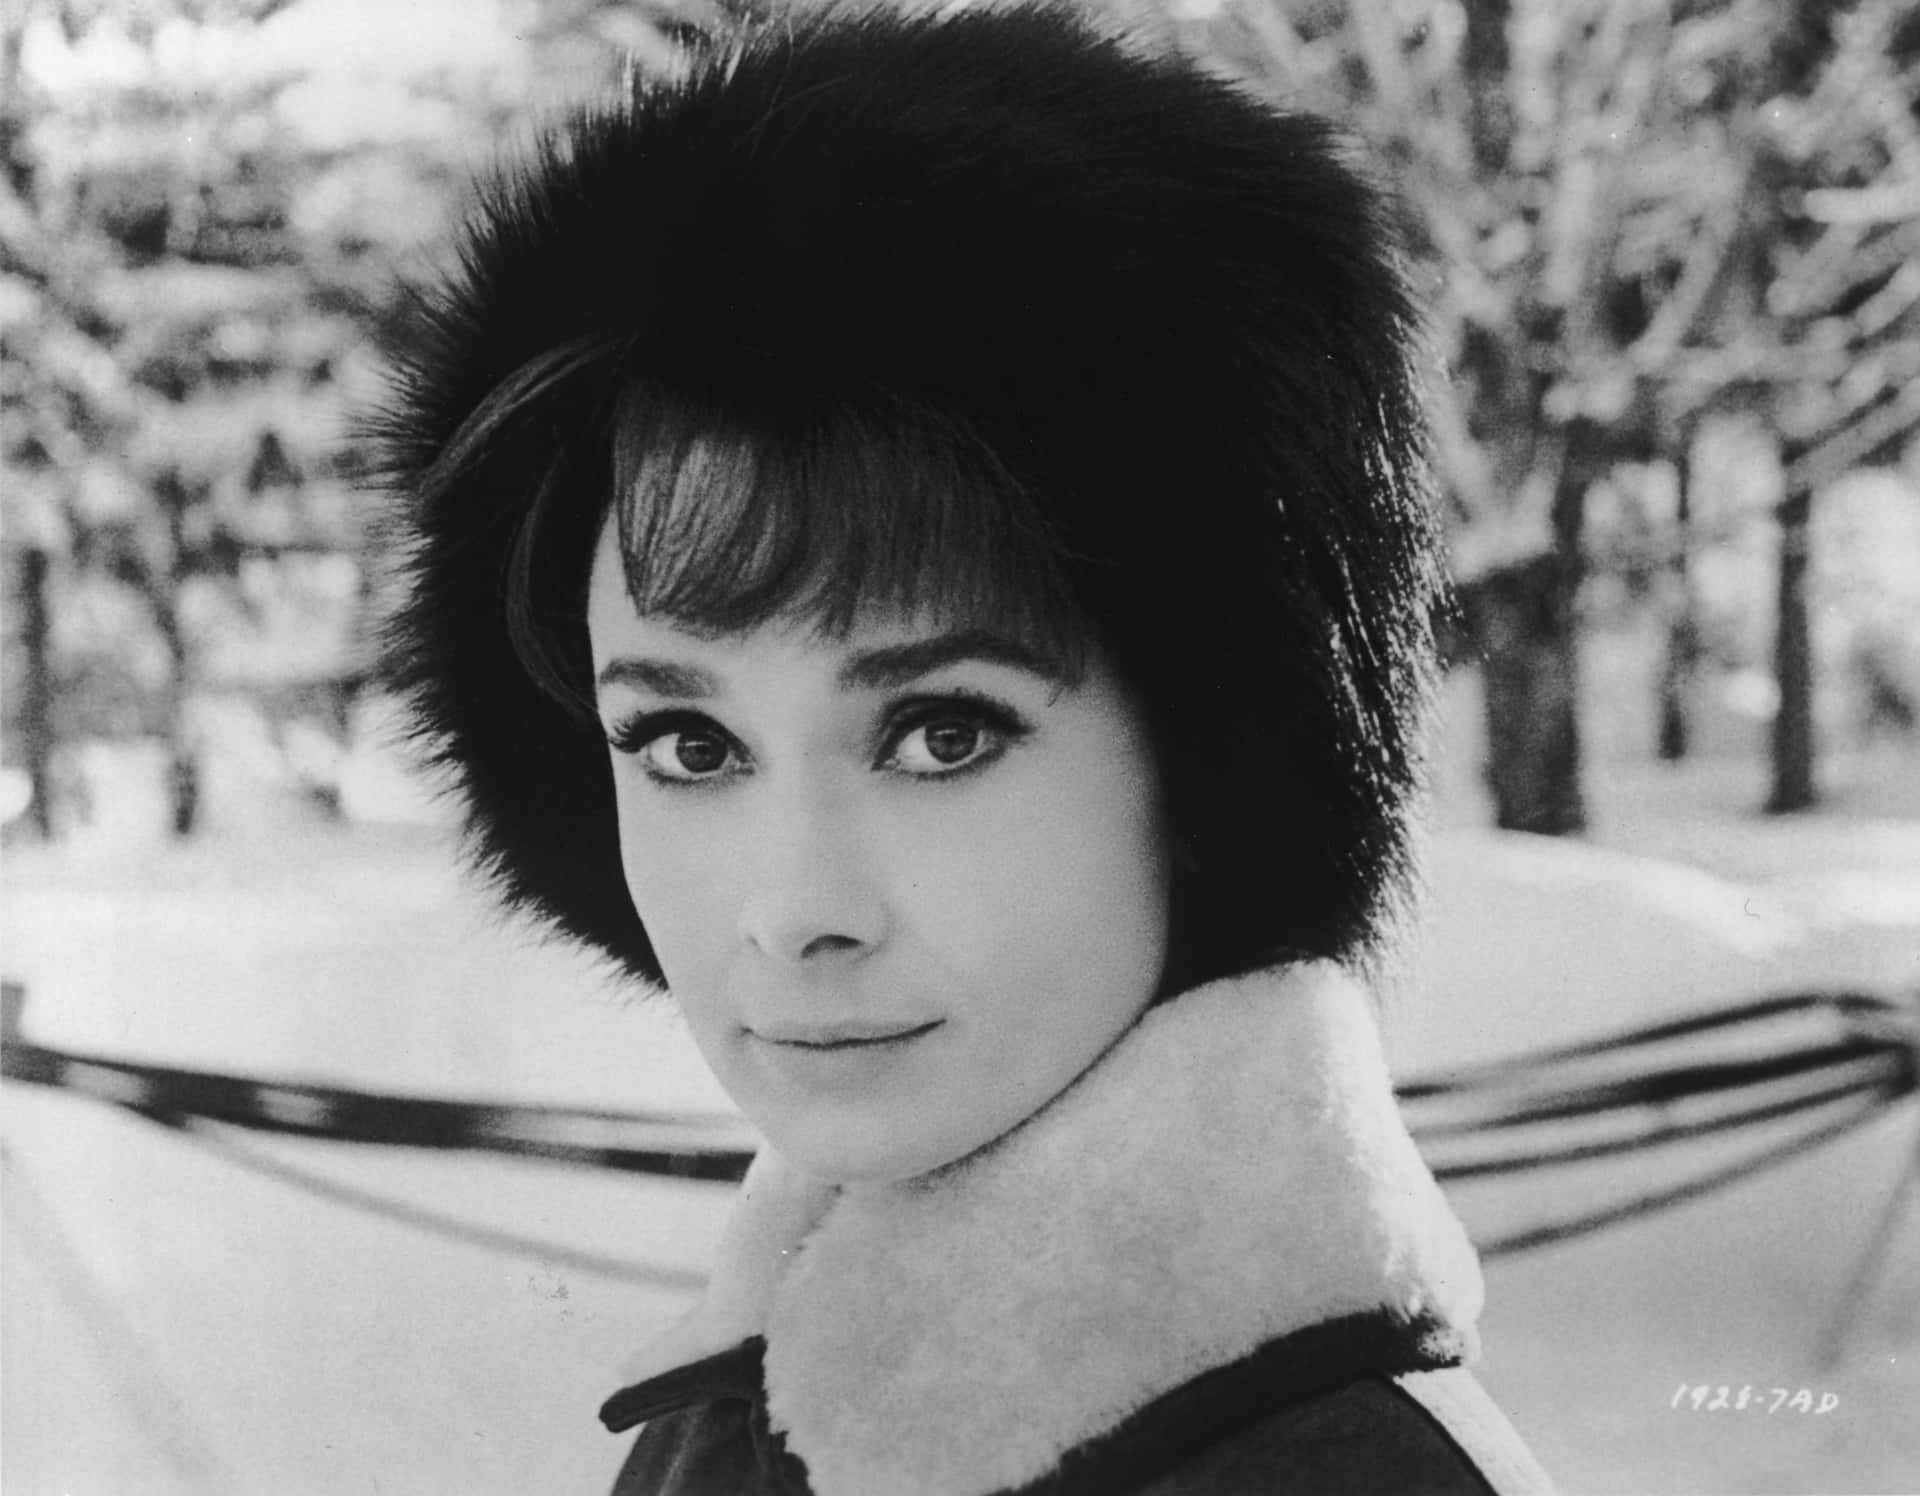 Audrey Hepburn embracing elegance and sophistication